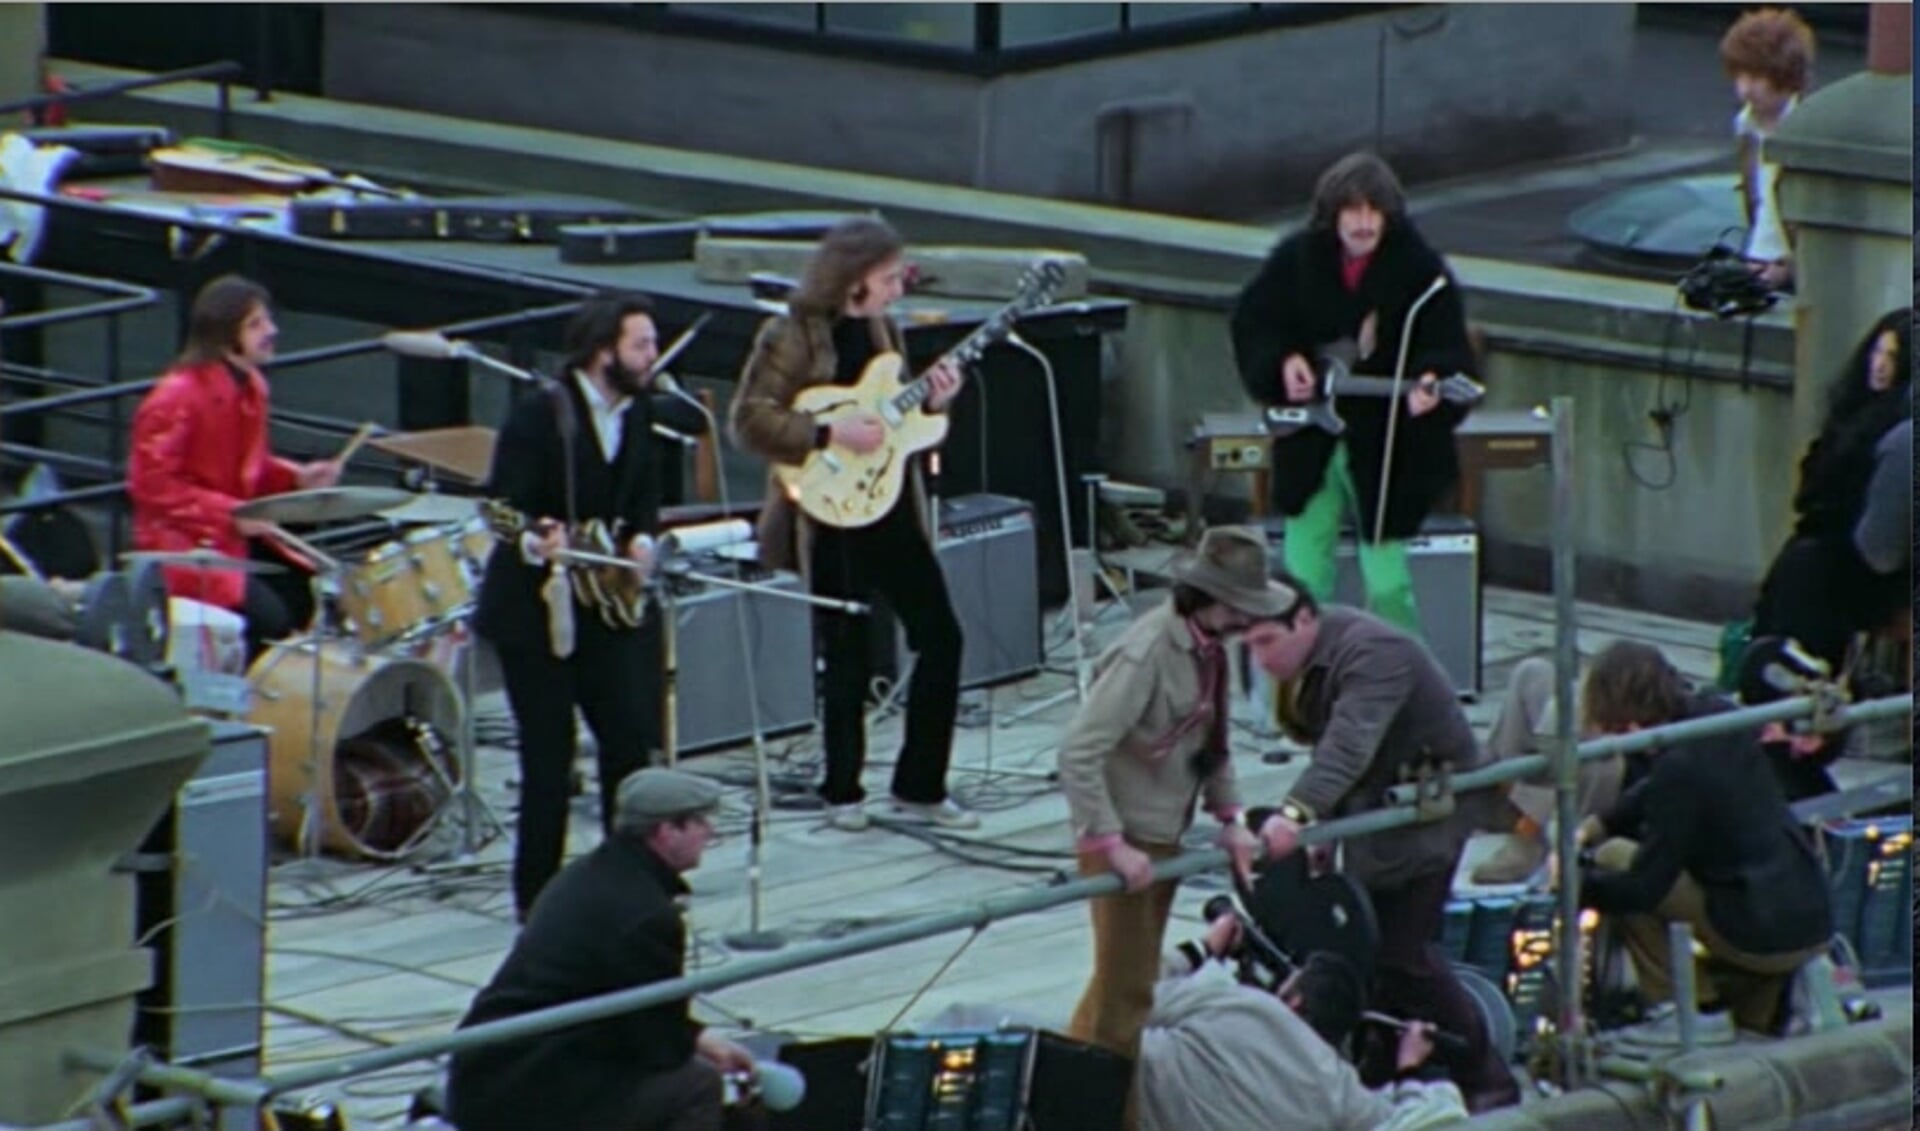 Op 30 januari 1969 gaven The Beatles een onaangekondigd concert op het dak van hun Apple Corps hoofdkantoor in Londen. 